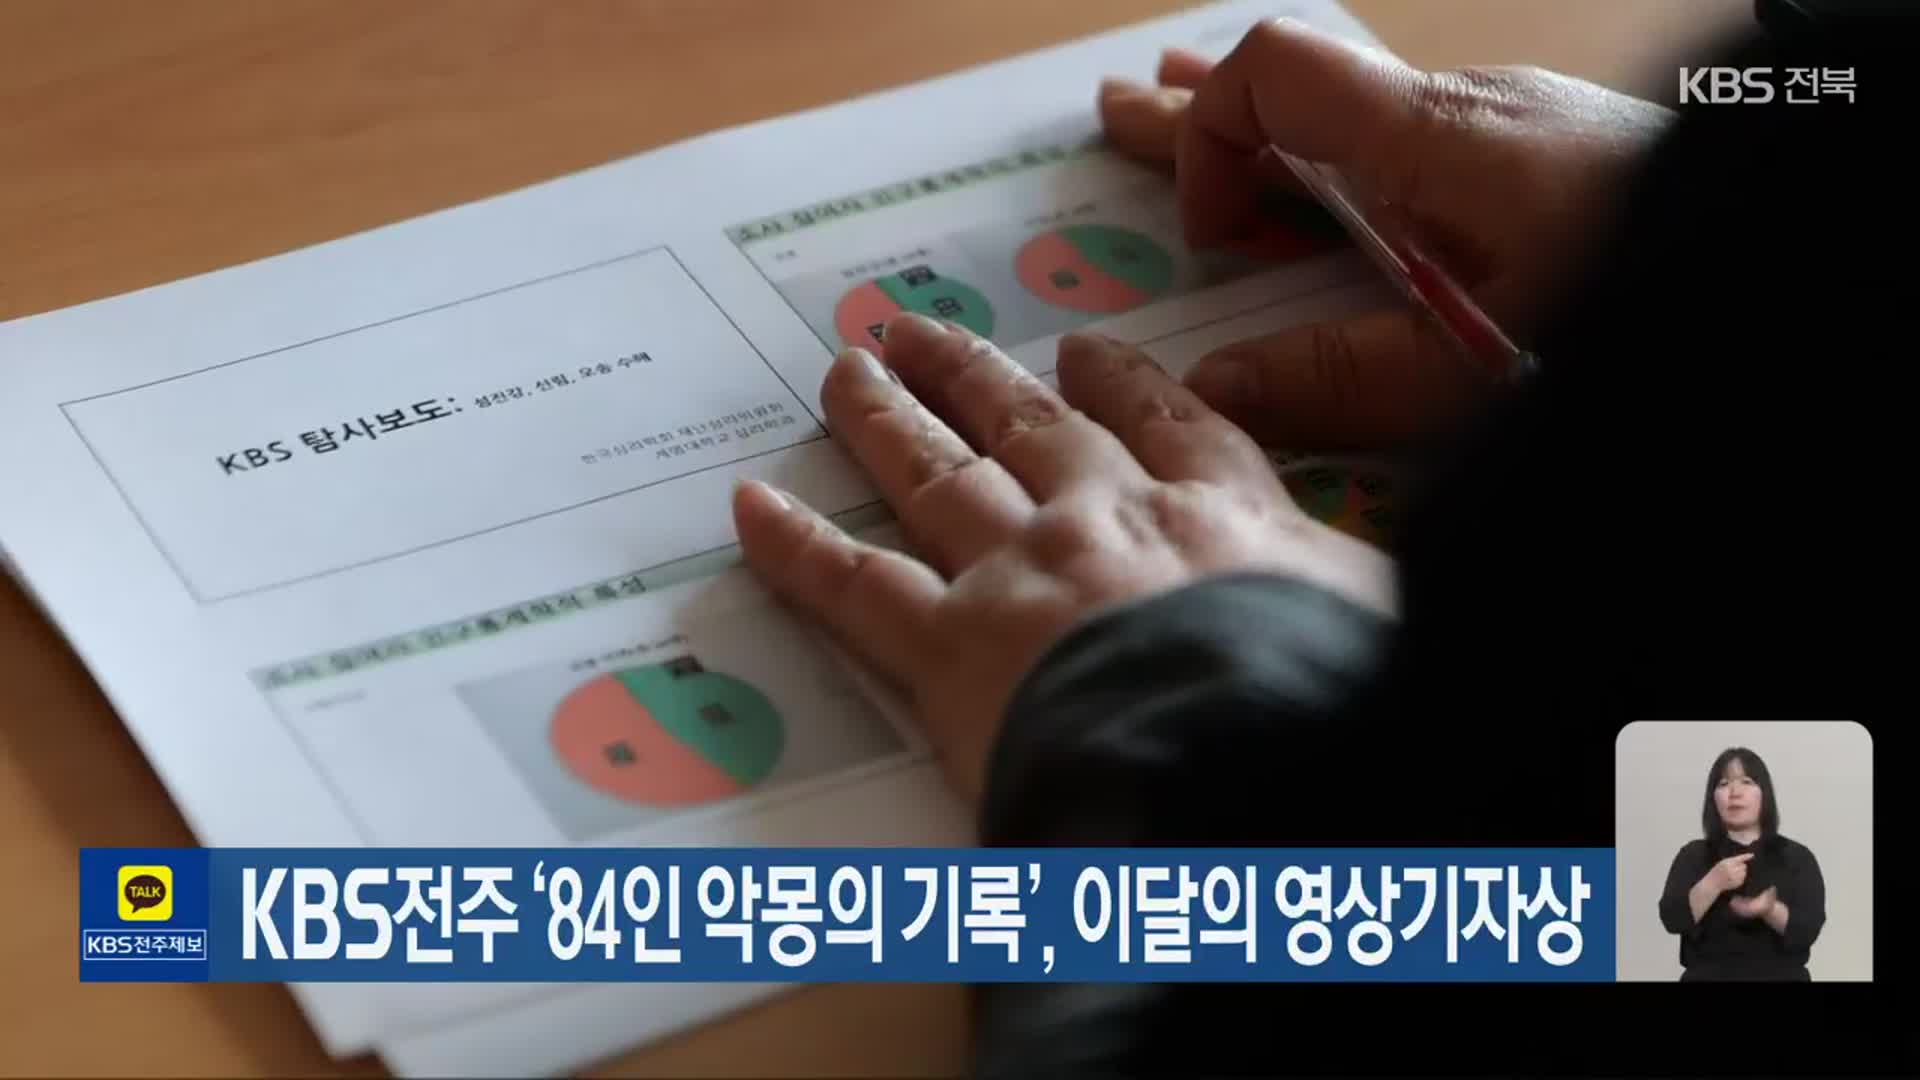 KBS전주 ‘84인 악몽의 기록’, 이달의 영상기자상